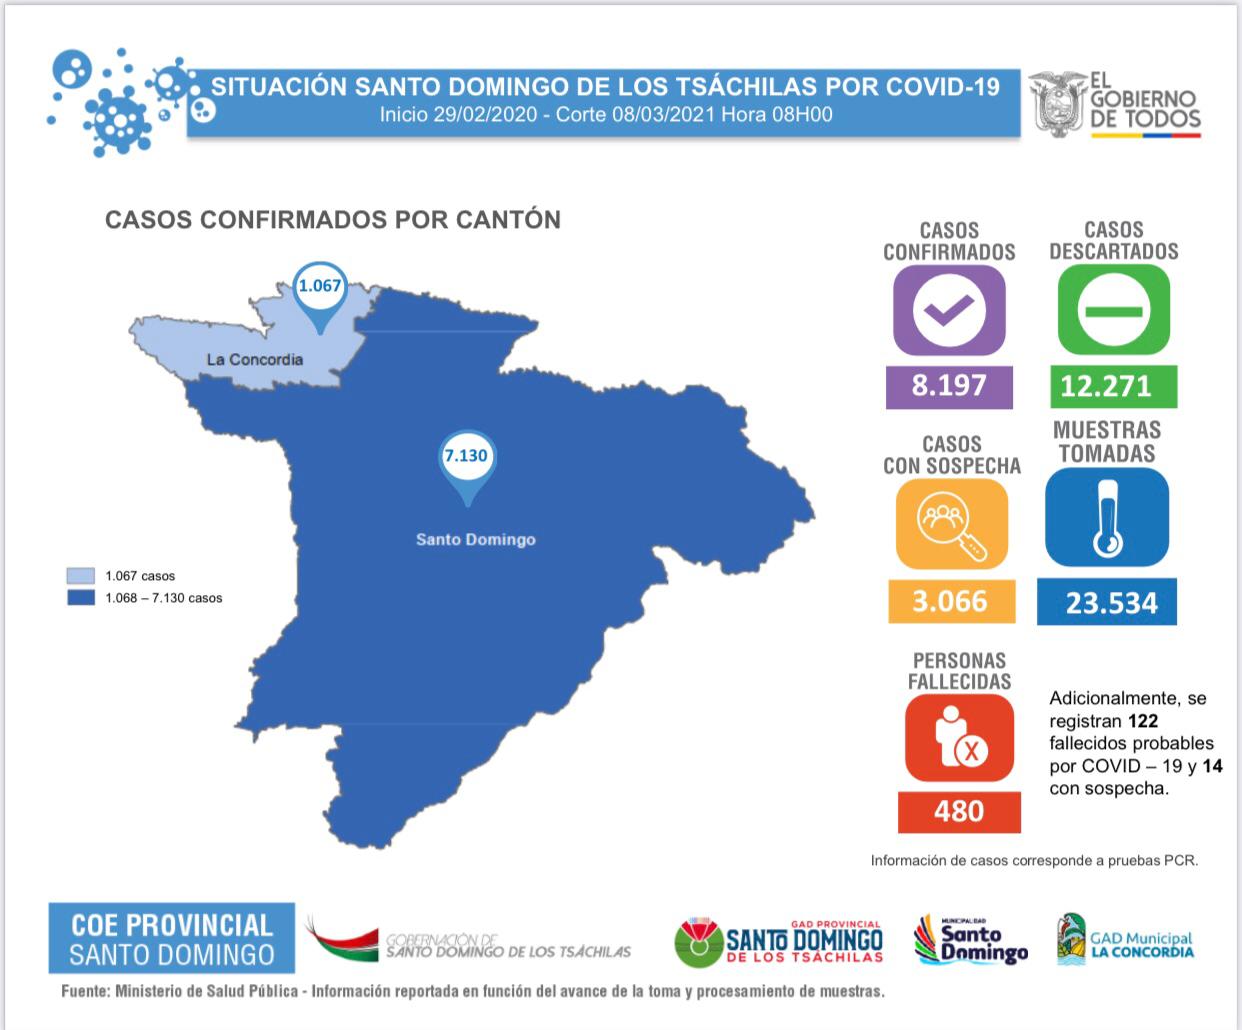 Cifras en torno a la emergencia sanitaria en Santo Domingo de los Tsáchilas, con corte al día lunes 08 de marzo del 2021. Fuente: COE Provincial SDT.